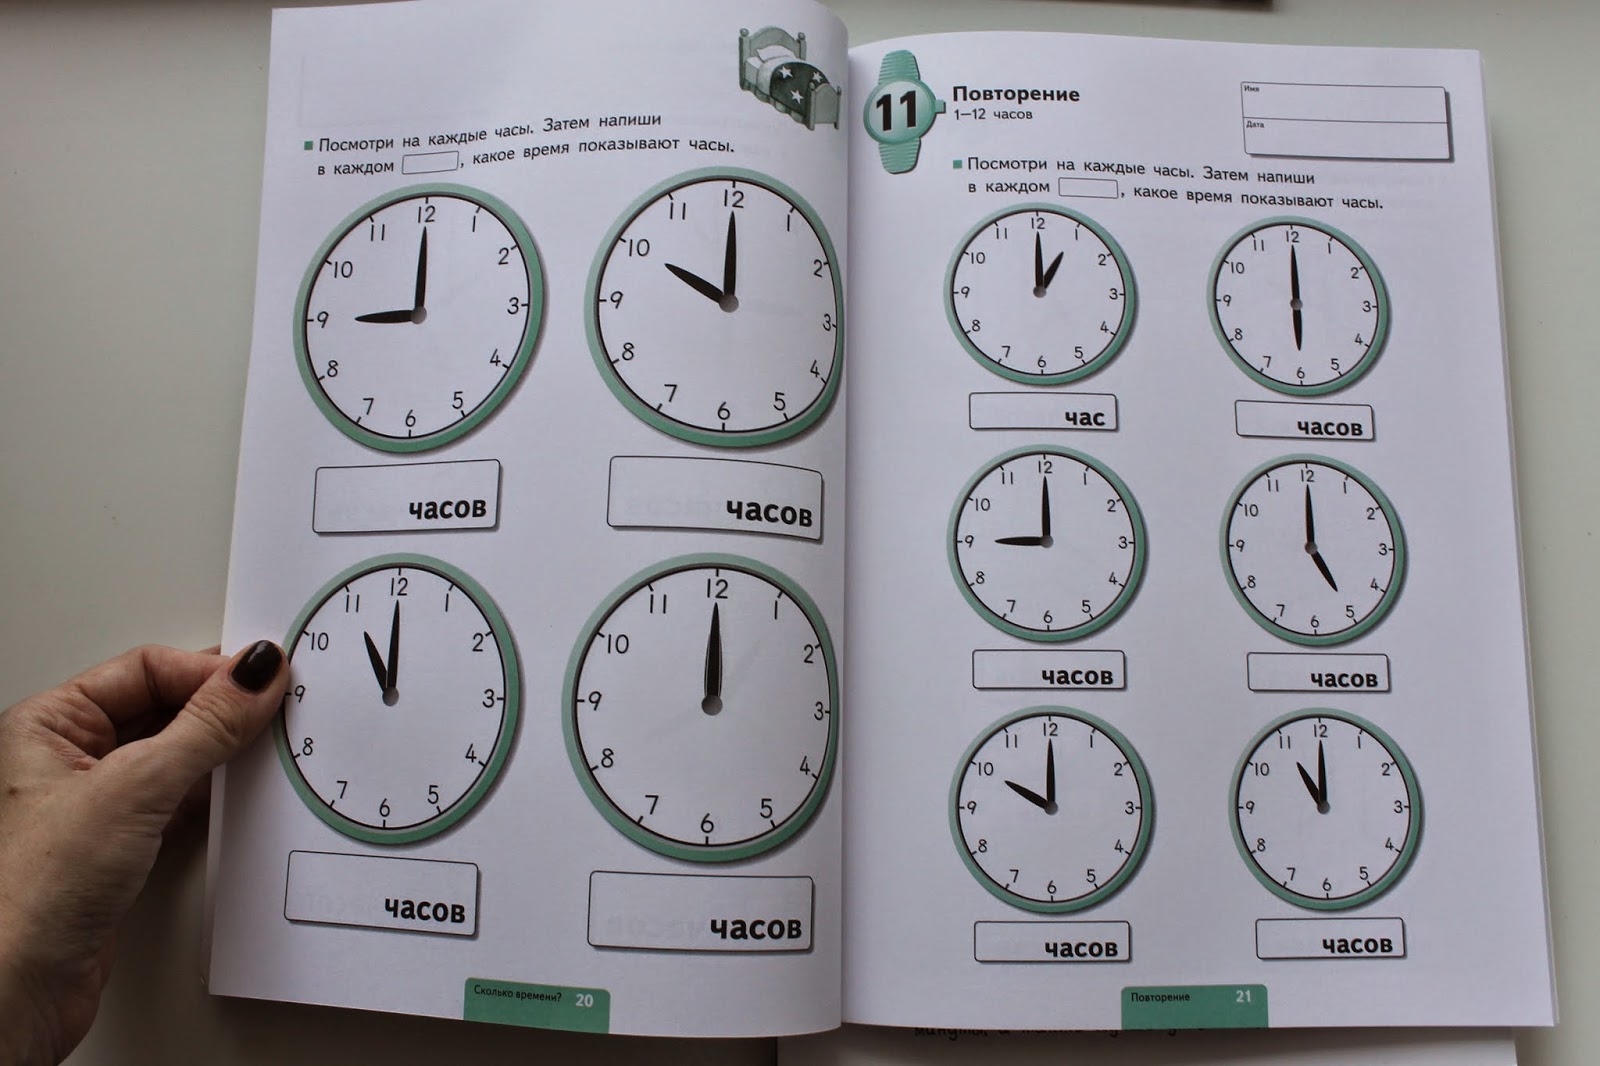 Сколько время в александров. Часы повторение. Определяем время по часам. Повторение часов и минут. Карточки с часами для определения времени.